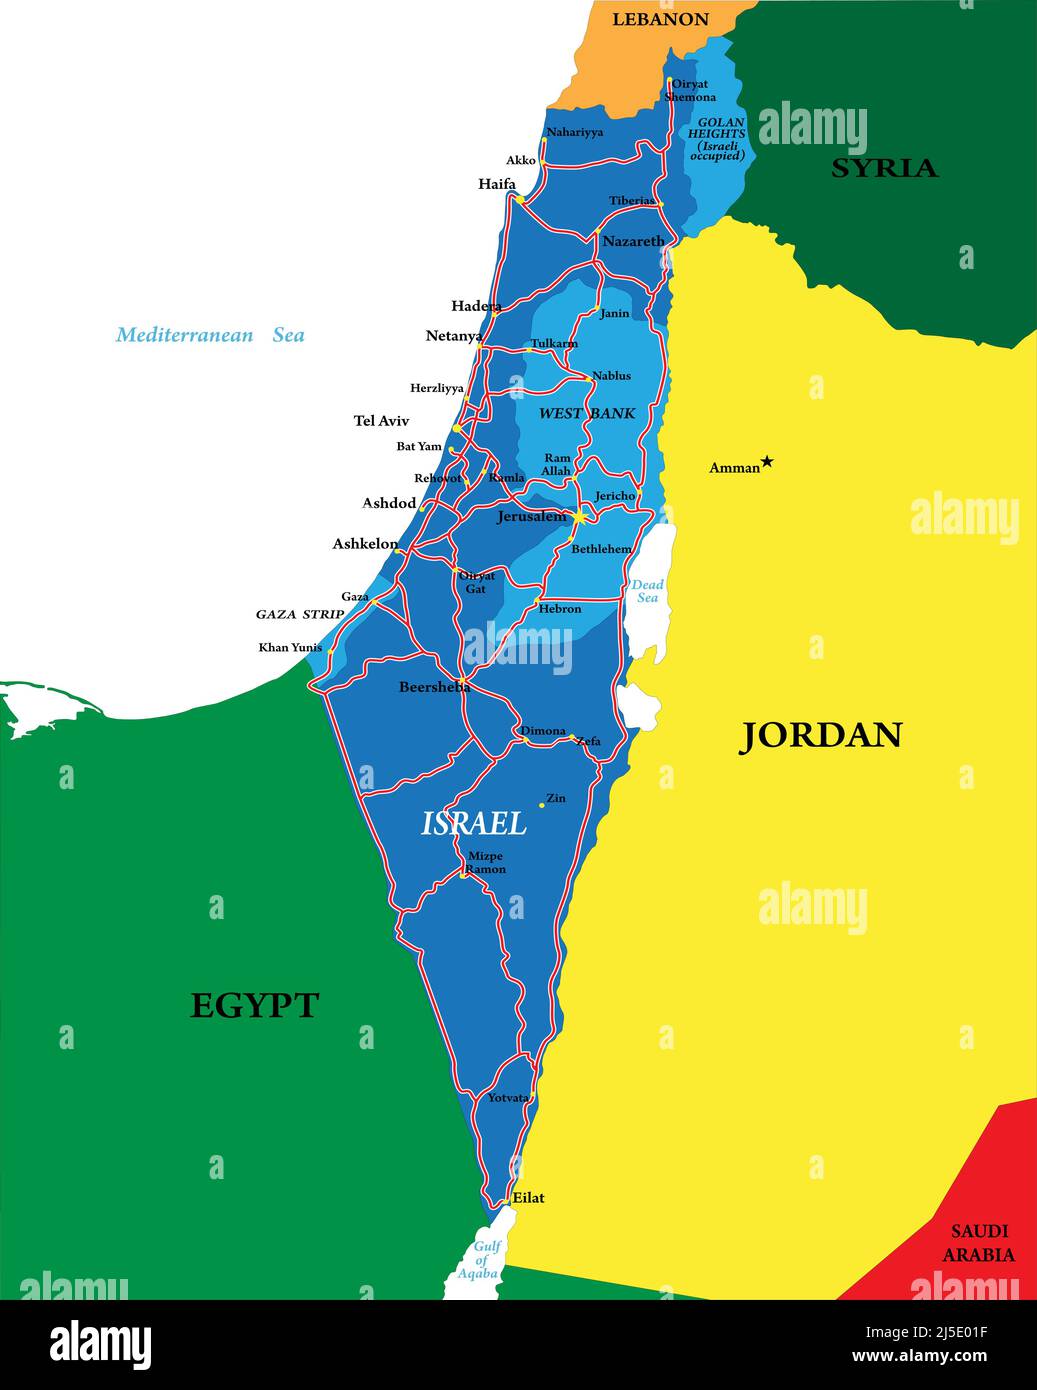 Mappa vettoriale molto dettagliata di Israele con le principali città, strade e paesi vicini. Illustrazione Vettoriale